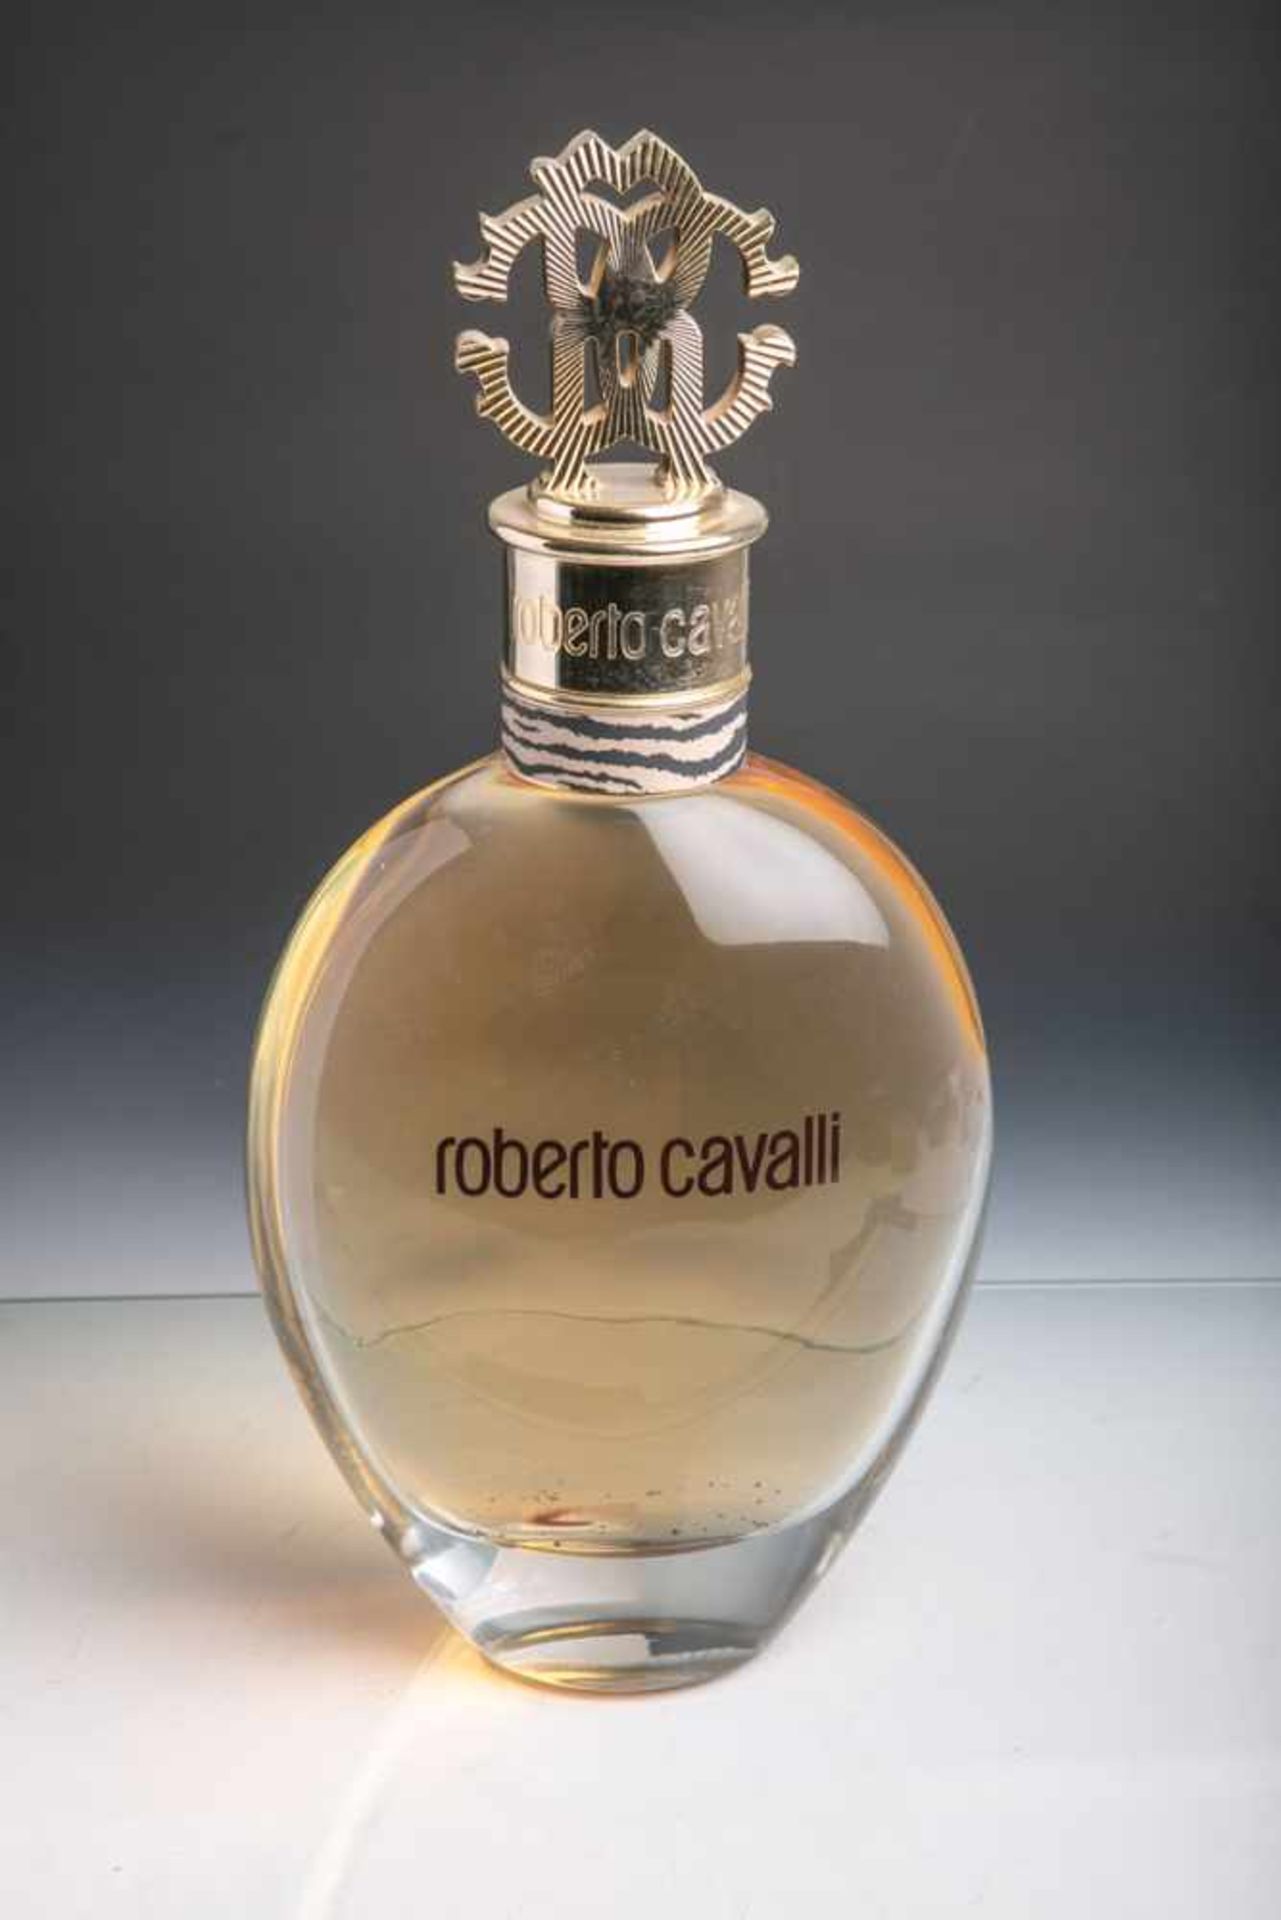 Groß-Factice"roberto cavalli" von Roberto Cavalli, mit Flüssigkeit, H. ca. 42 cm.